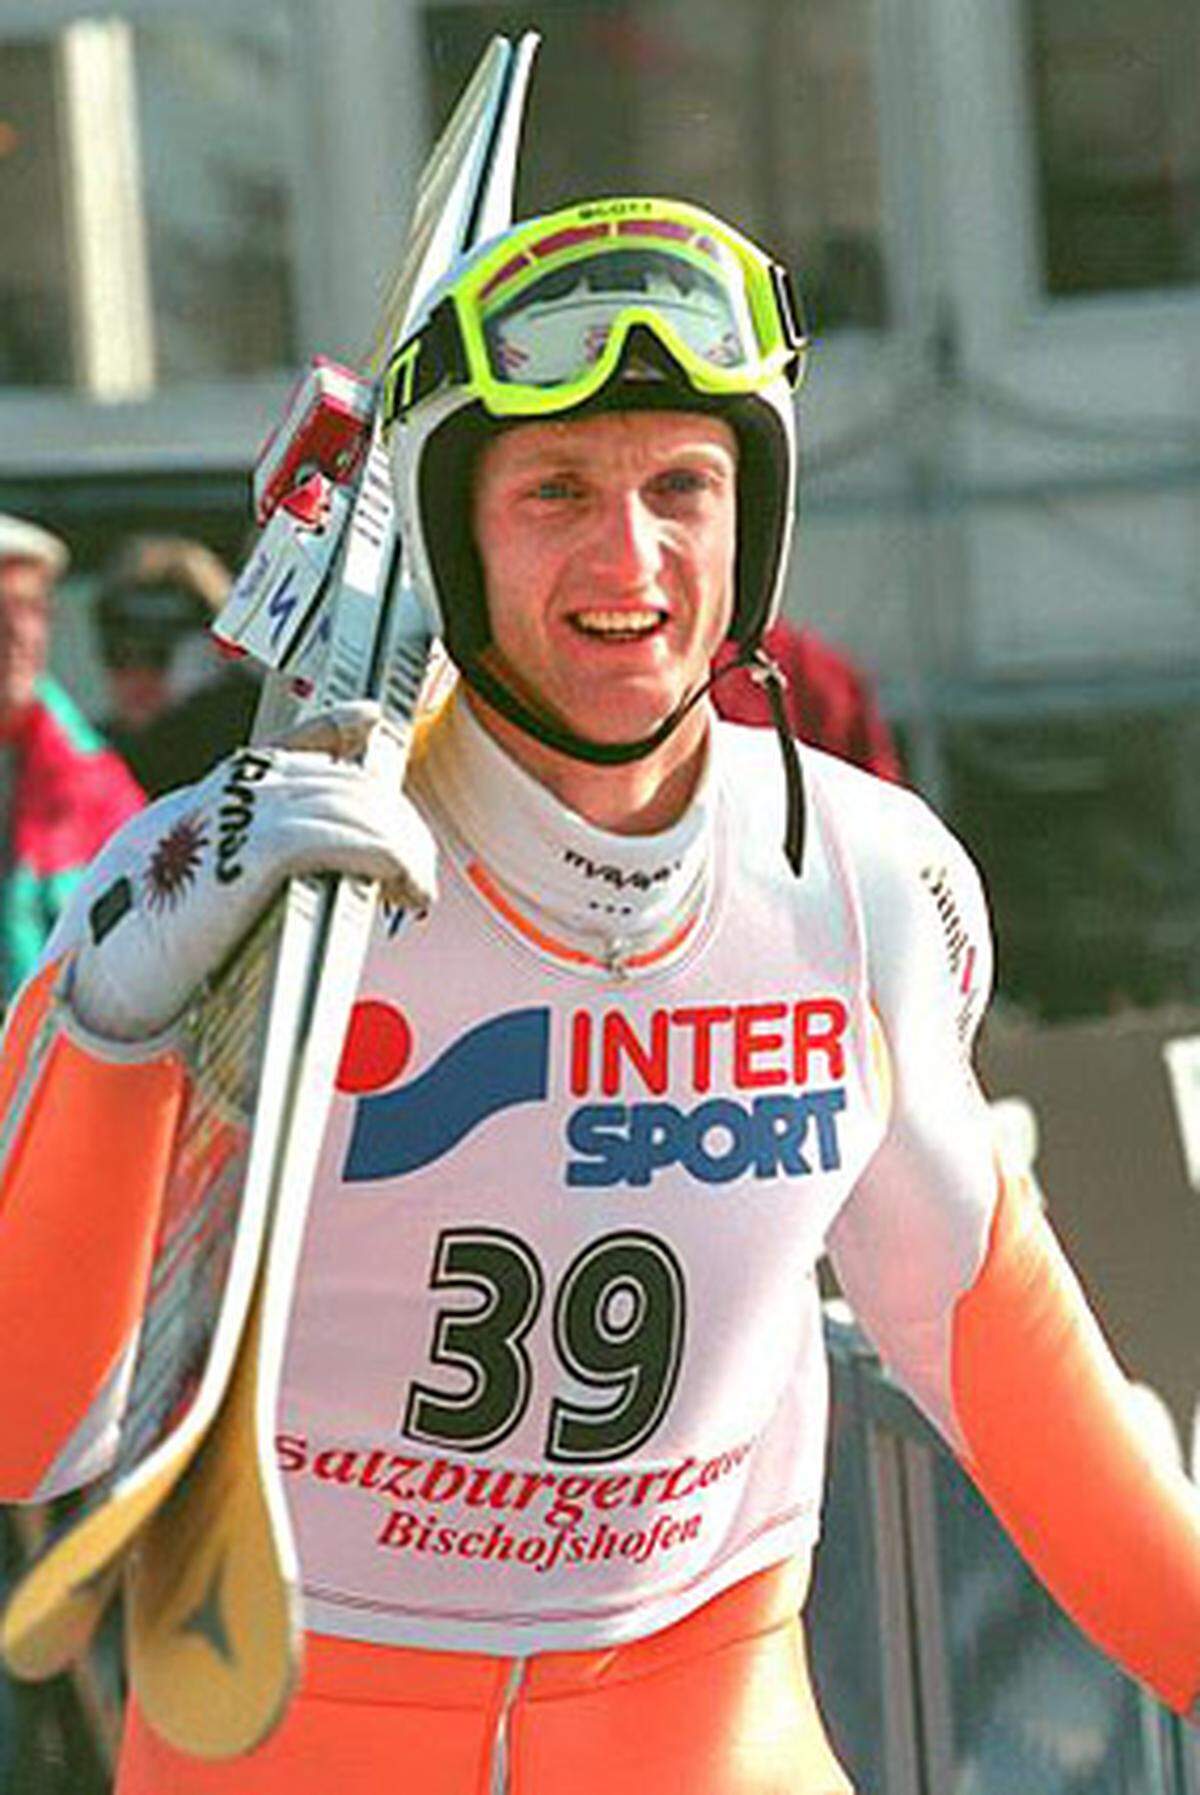 Seine große Stunde schlug bei der WM 1991 in Val di Fiemme: Auf der Normalschanze und mit dem Team eroberte Kuttin jeweils WM-Gold. Dazu kommen zwei Bronzemedaillen: 1989 in Lahti auf der Normalschanze und 1993 in Falun mit dem Team.